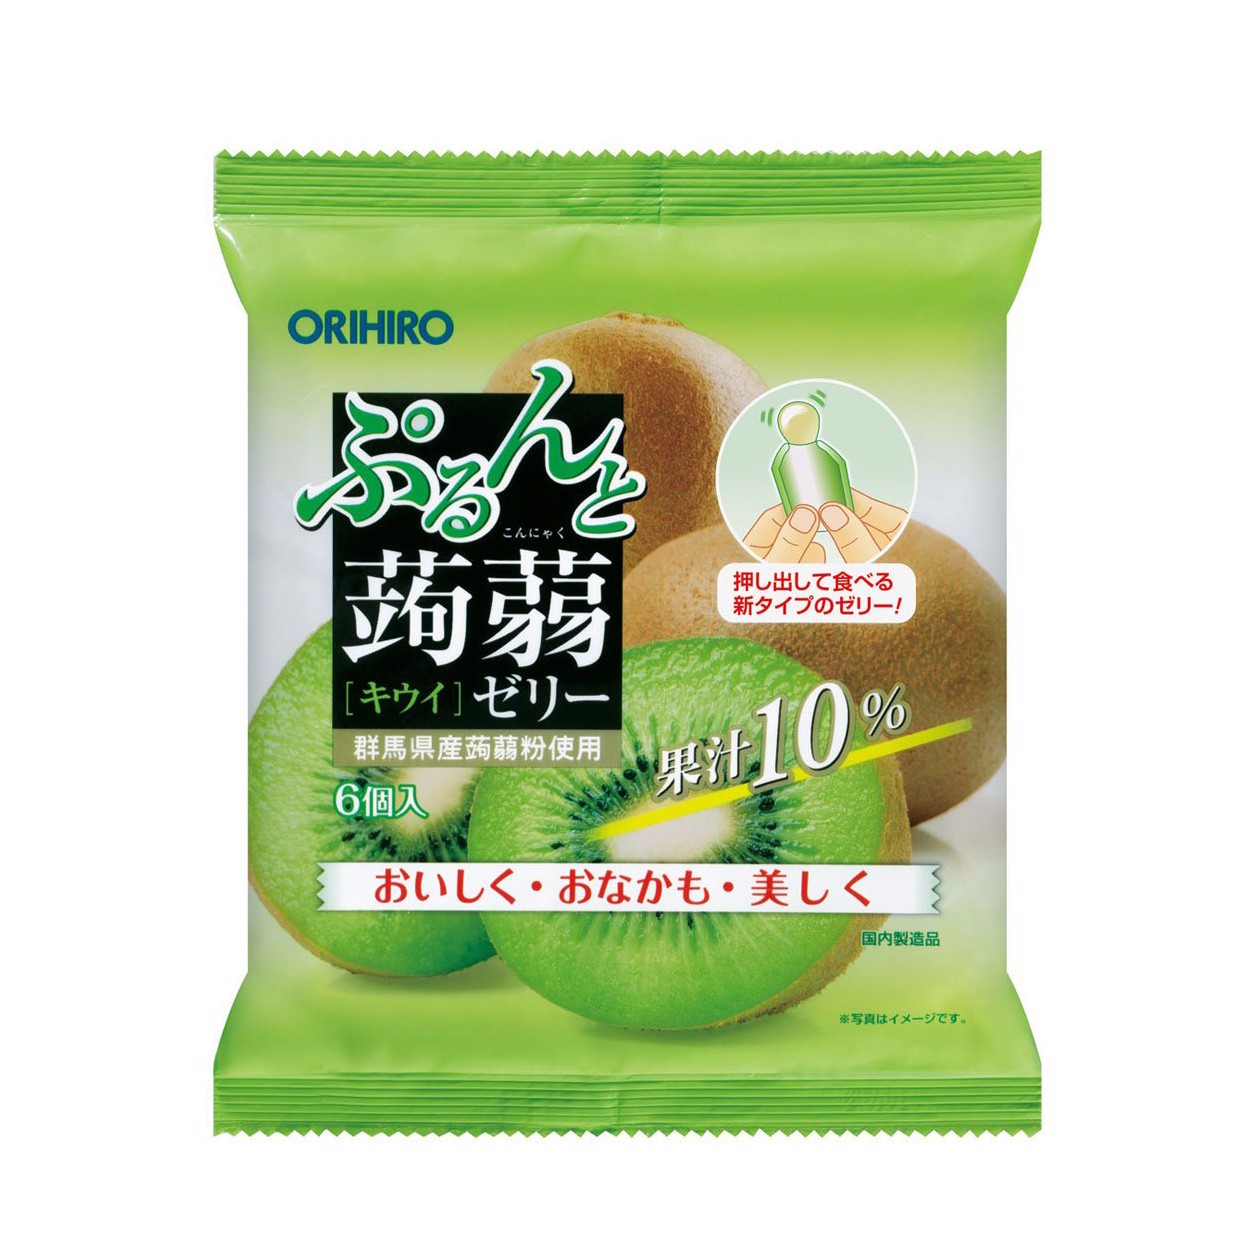 Thạch trái cây Orihiro vị Kiwi gói 120g (6c/gói) - Thạch jelly hương trái cây cho bé Nhật Bản - VTP mẹ và bé TXTP030